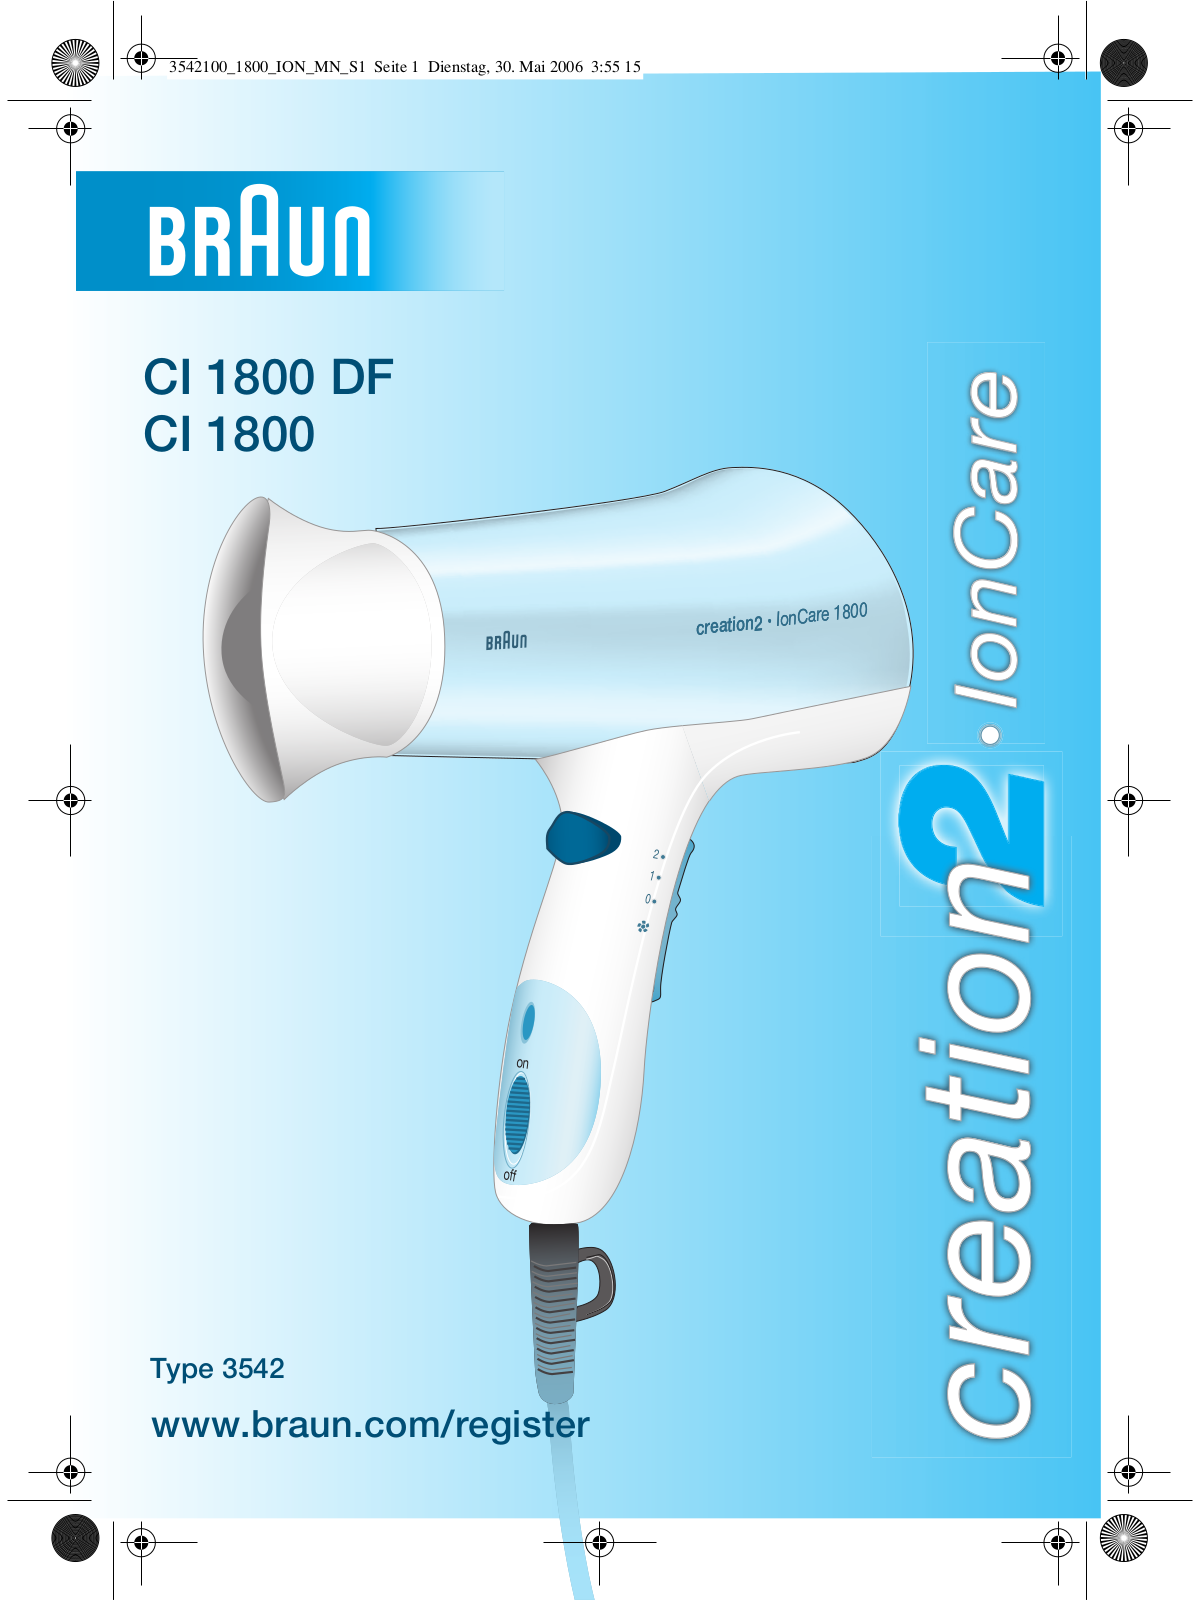 Braun CI 1800 MN User Manual